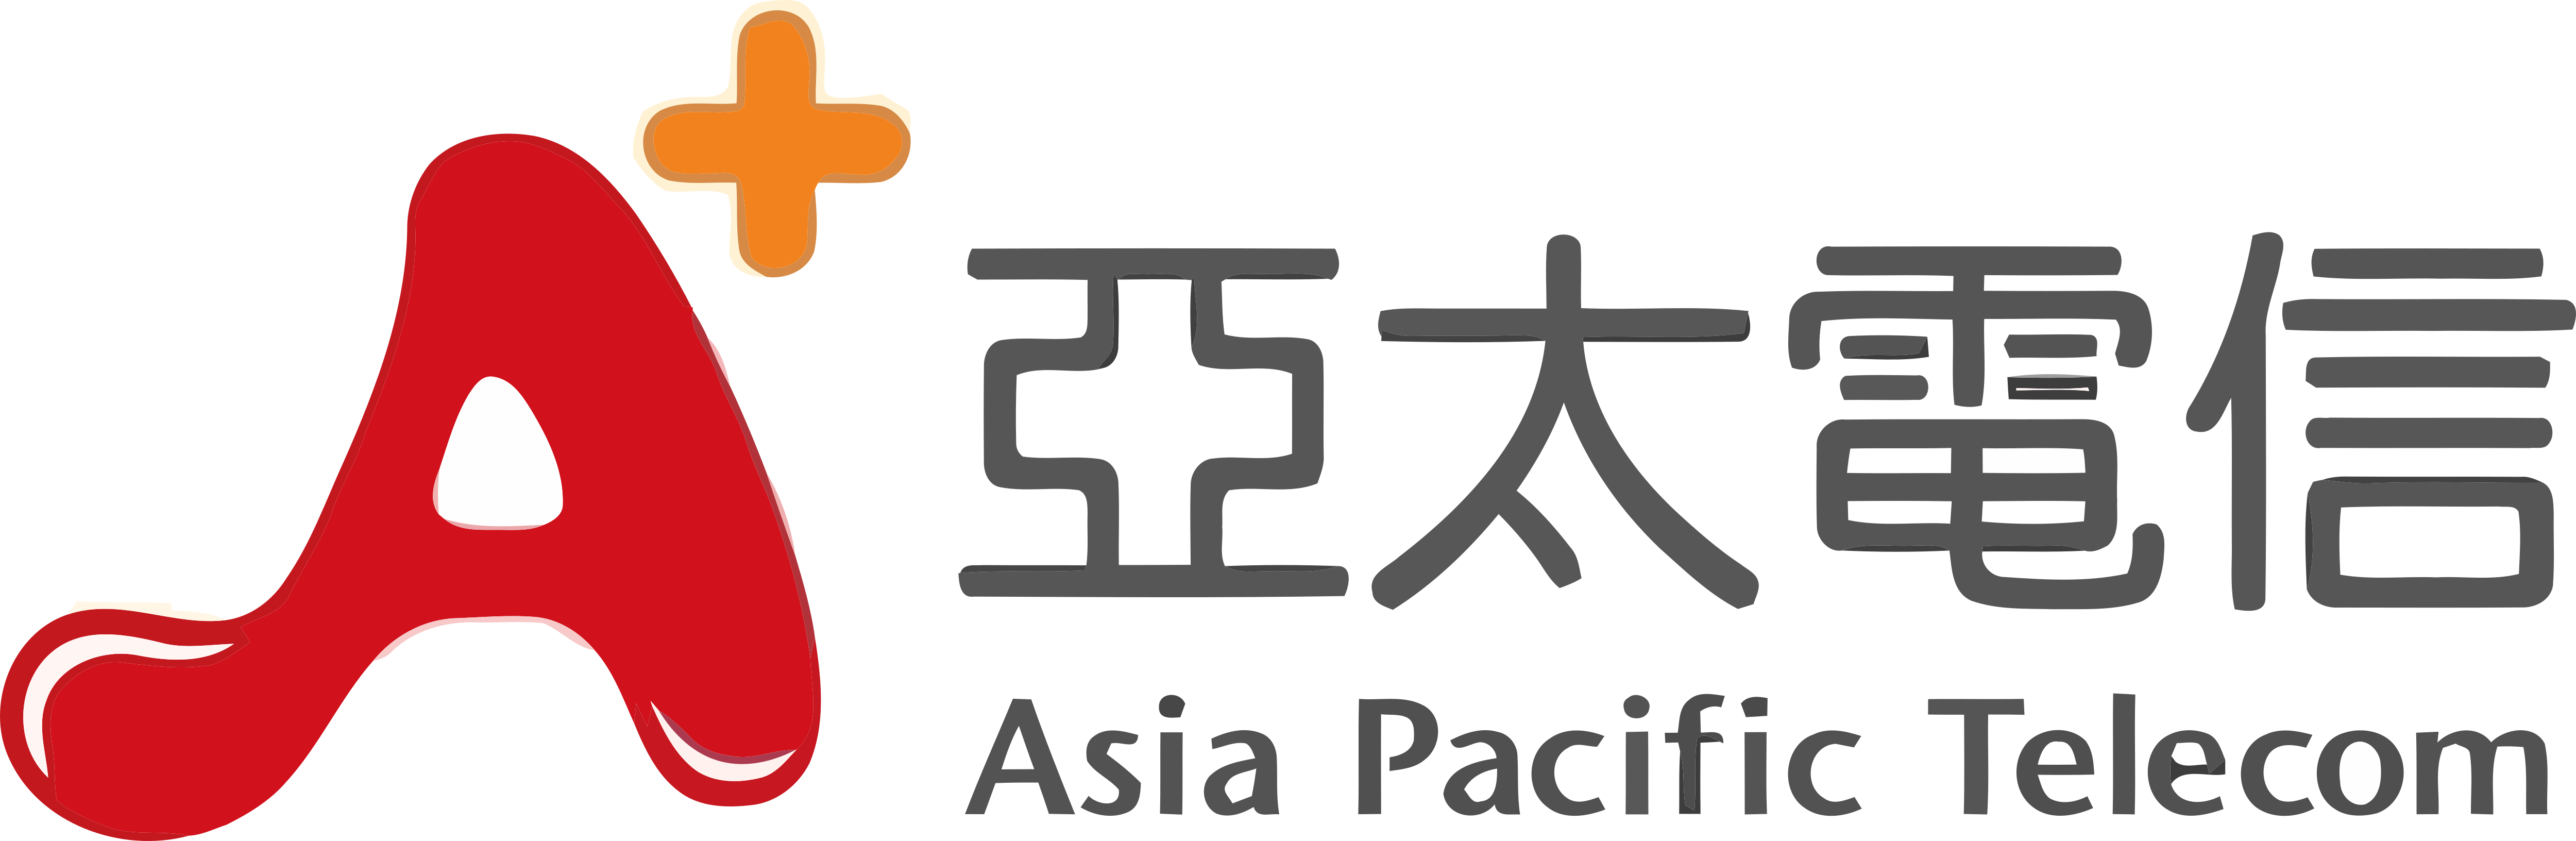 B c asia. Азия лого. Asia Pacific. Asia Pacific logo. Asia Pacific Bank logo.